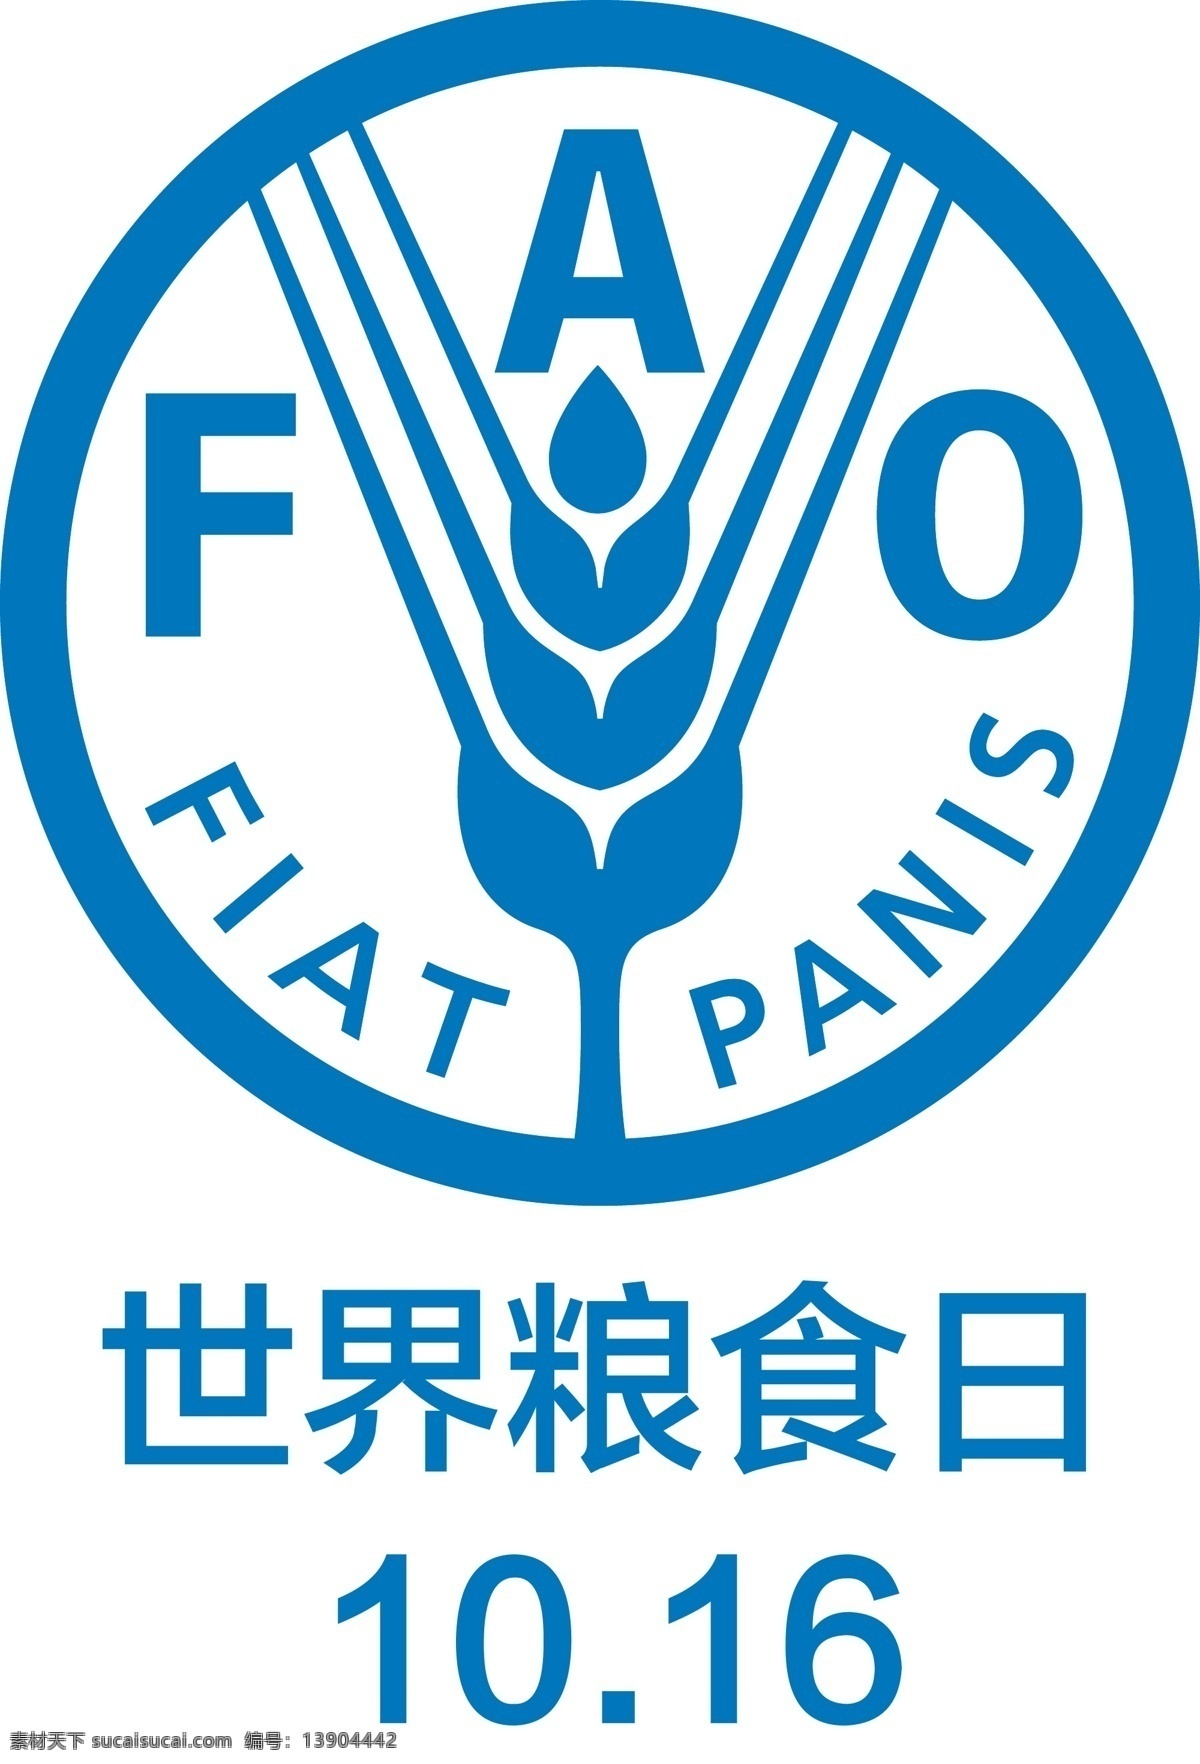 世界 粮食 日 logo 矢量粮食日 粮食日 矢量logo 粮食日图标 标志 矢量标志 粮食日标志 logo设计